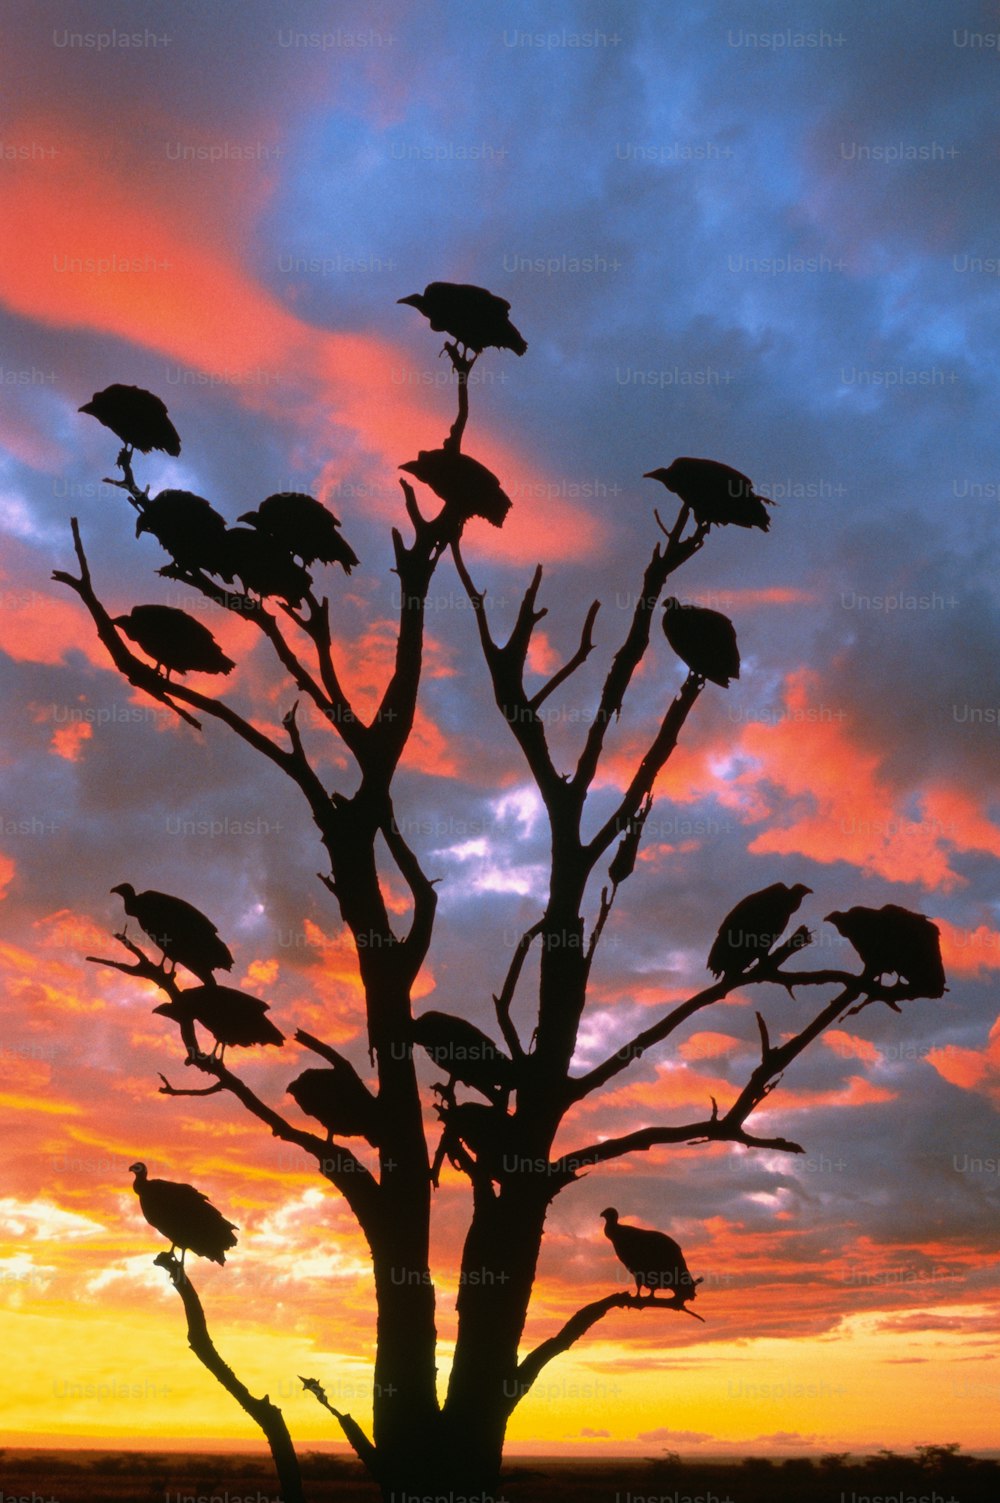 크루거 국립 공원, 남아프리카. 독수리는 벌거 벗은 머리와 구부러진 부리가있는 큰 새입니다. 그들은 다른 포식자가 남긴 썩은 고기를 먹는 청소부입니다. 대부분의 종은 냄새 감각이 없으므로 시력으로 사냥합니다.